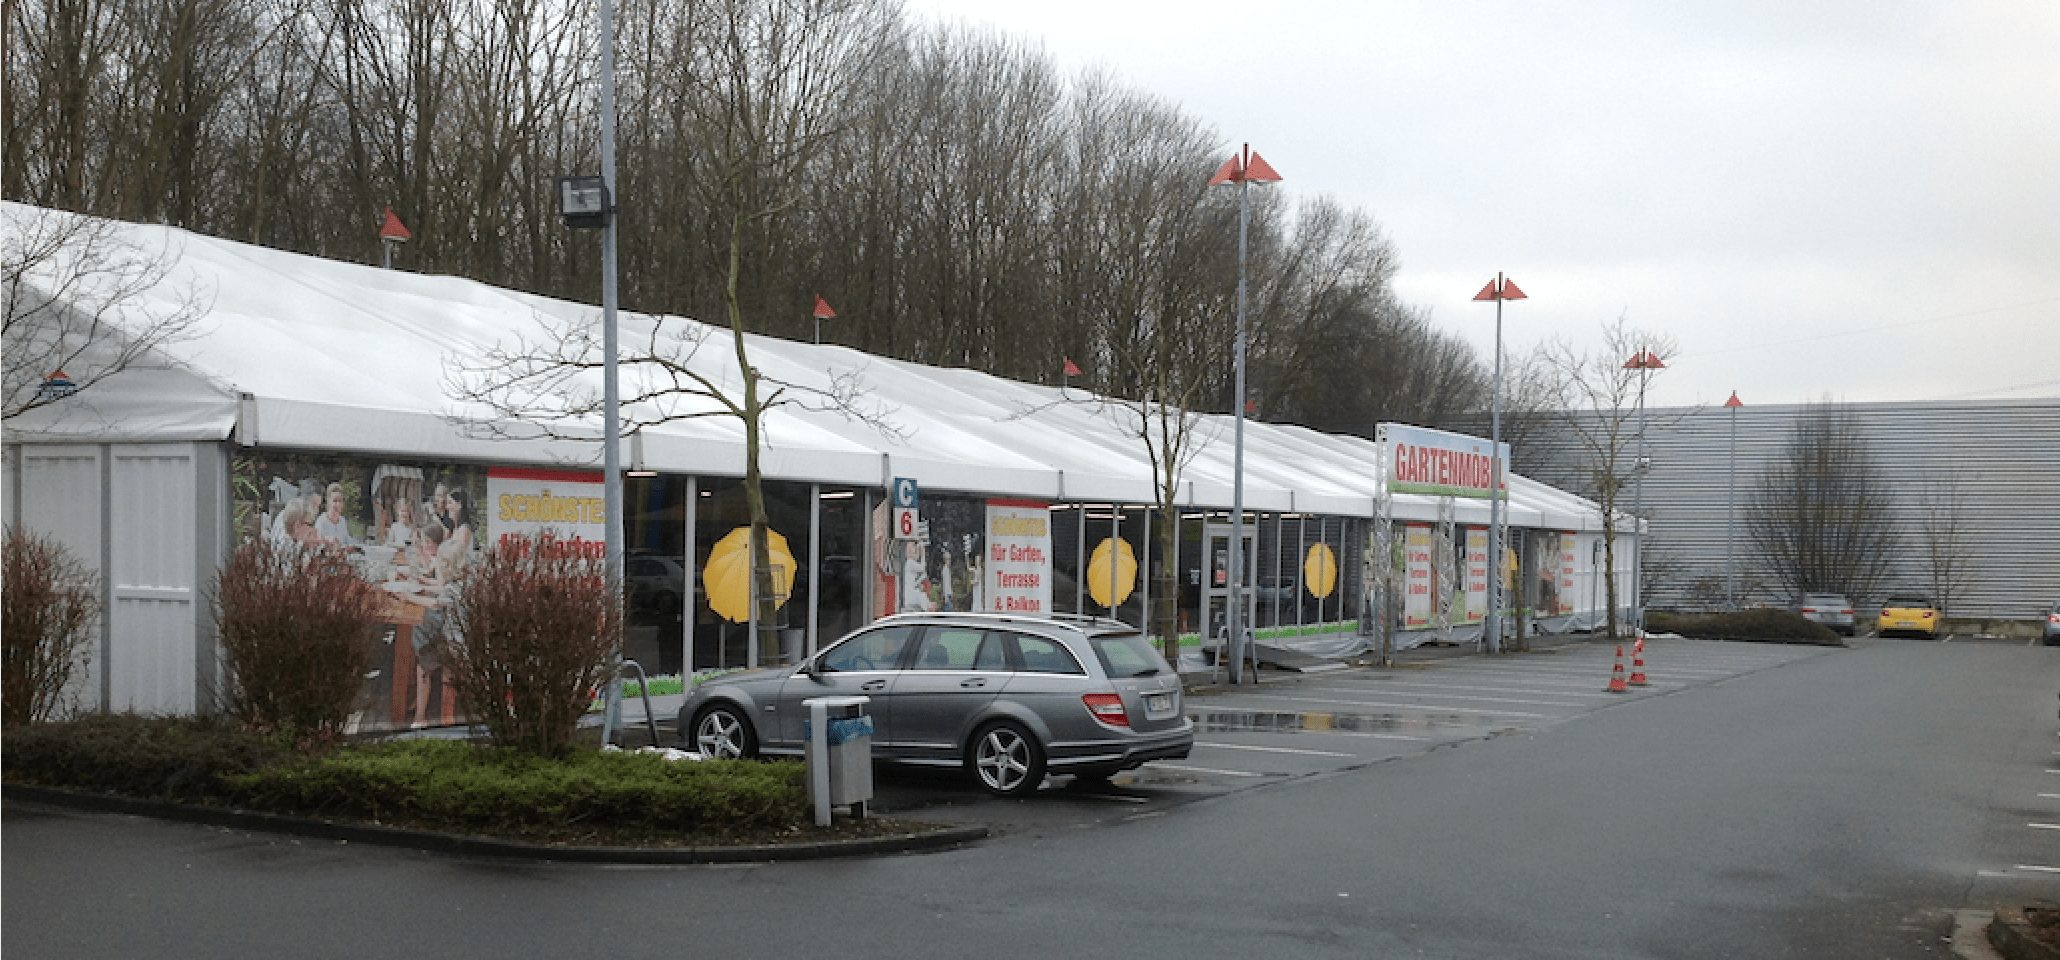 Temporärer Verkauf von Saisonwaren in Zelten und Zelthallen von Intertent Zeltverleih auf Parkplatz (www.intertent.de)